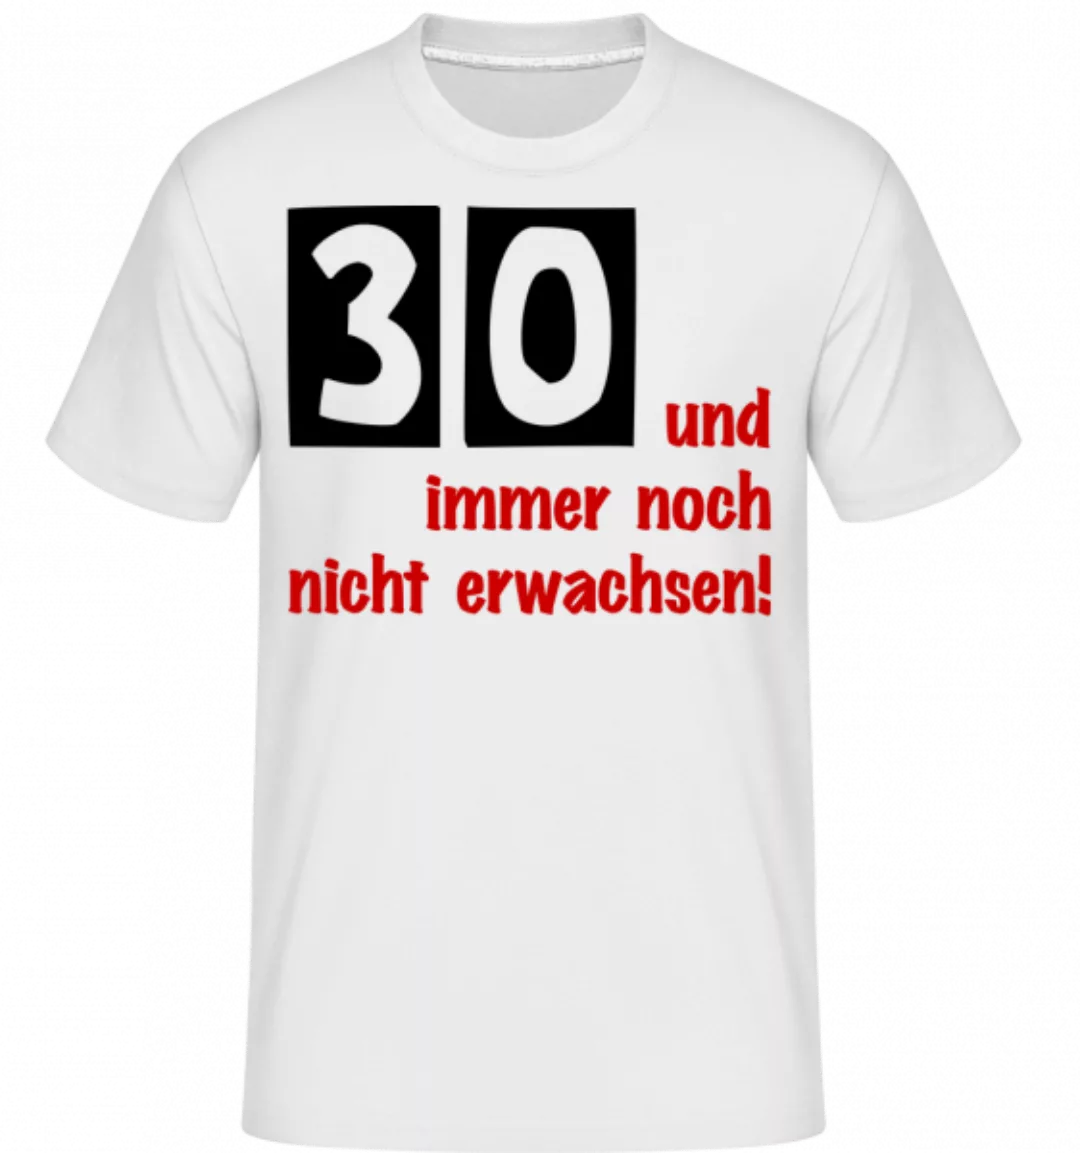 30 Und Immer Noch Nicht Erwachsen! · Shirtinator Männer T-Shirt günstig online kaufen